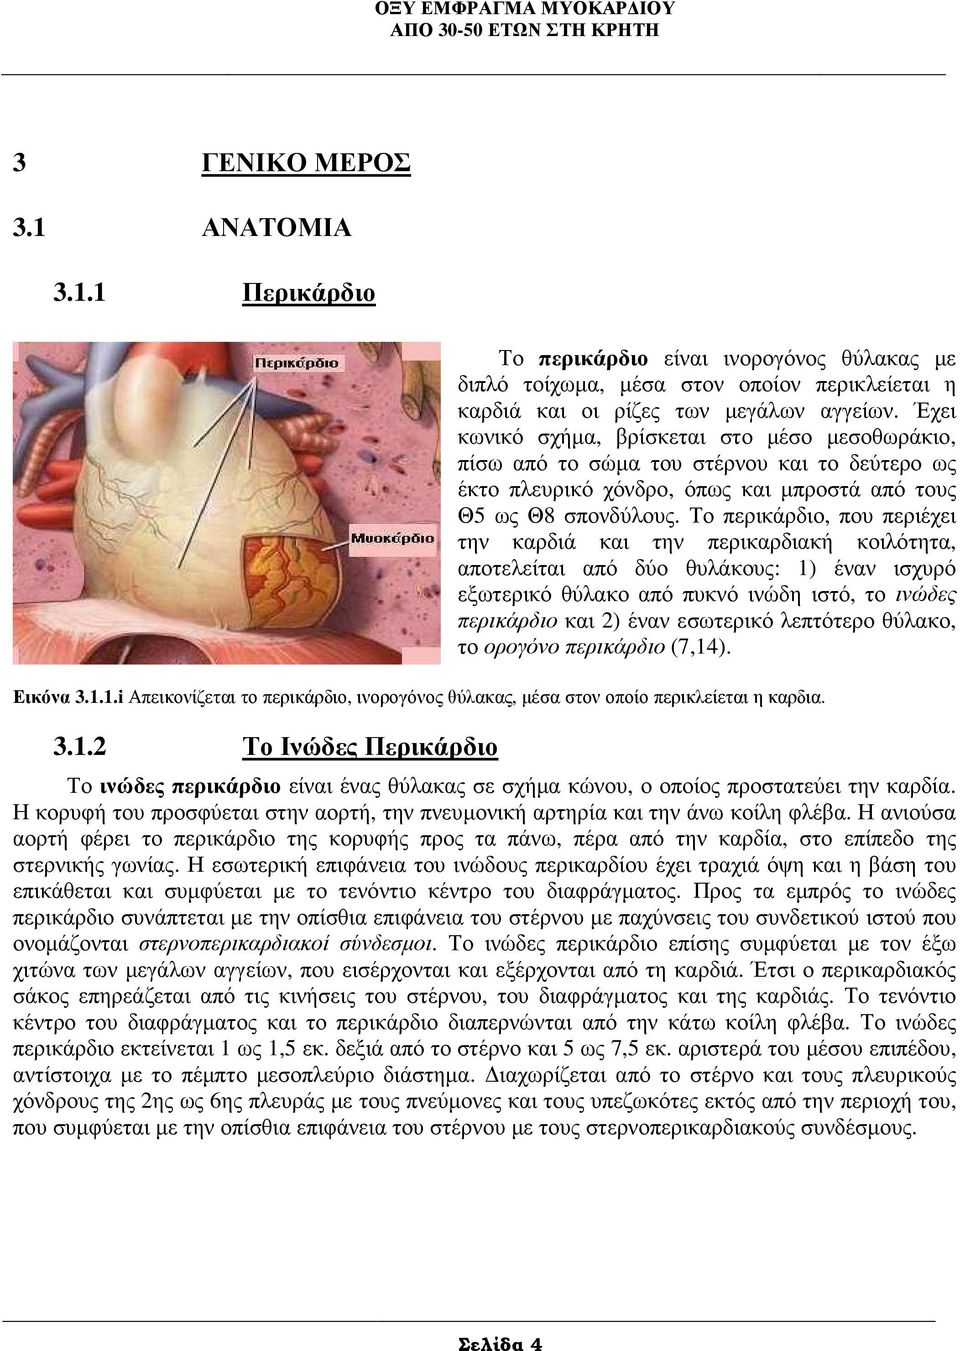 Το περικάρδιο, που περιέχει την καρδιά και την περικαρδιακή κοιλότητα, αποτελείται από δύο θυλάκους: 1) έναν ισχυρό εξωτερικό θύλακο από πυκνό ινώδη ιστό, το ινώδες περικάρδιο και 2) έναν εσωτερικό